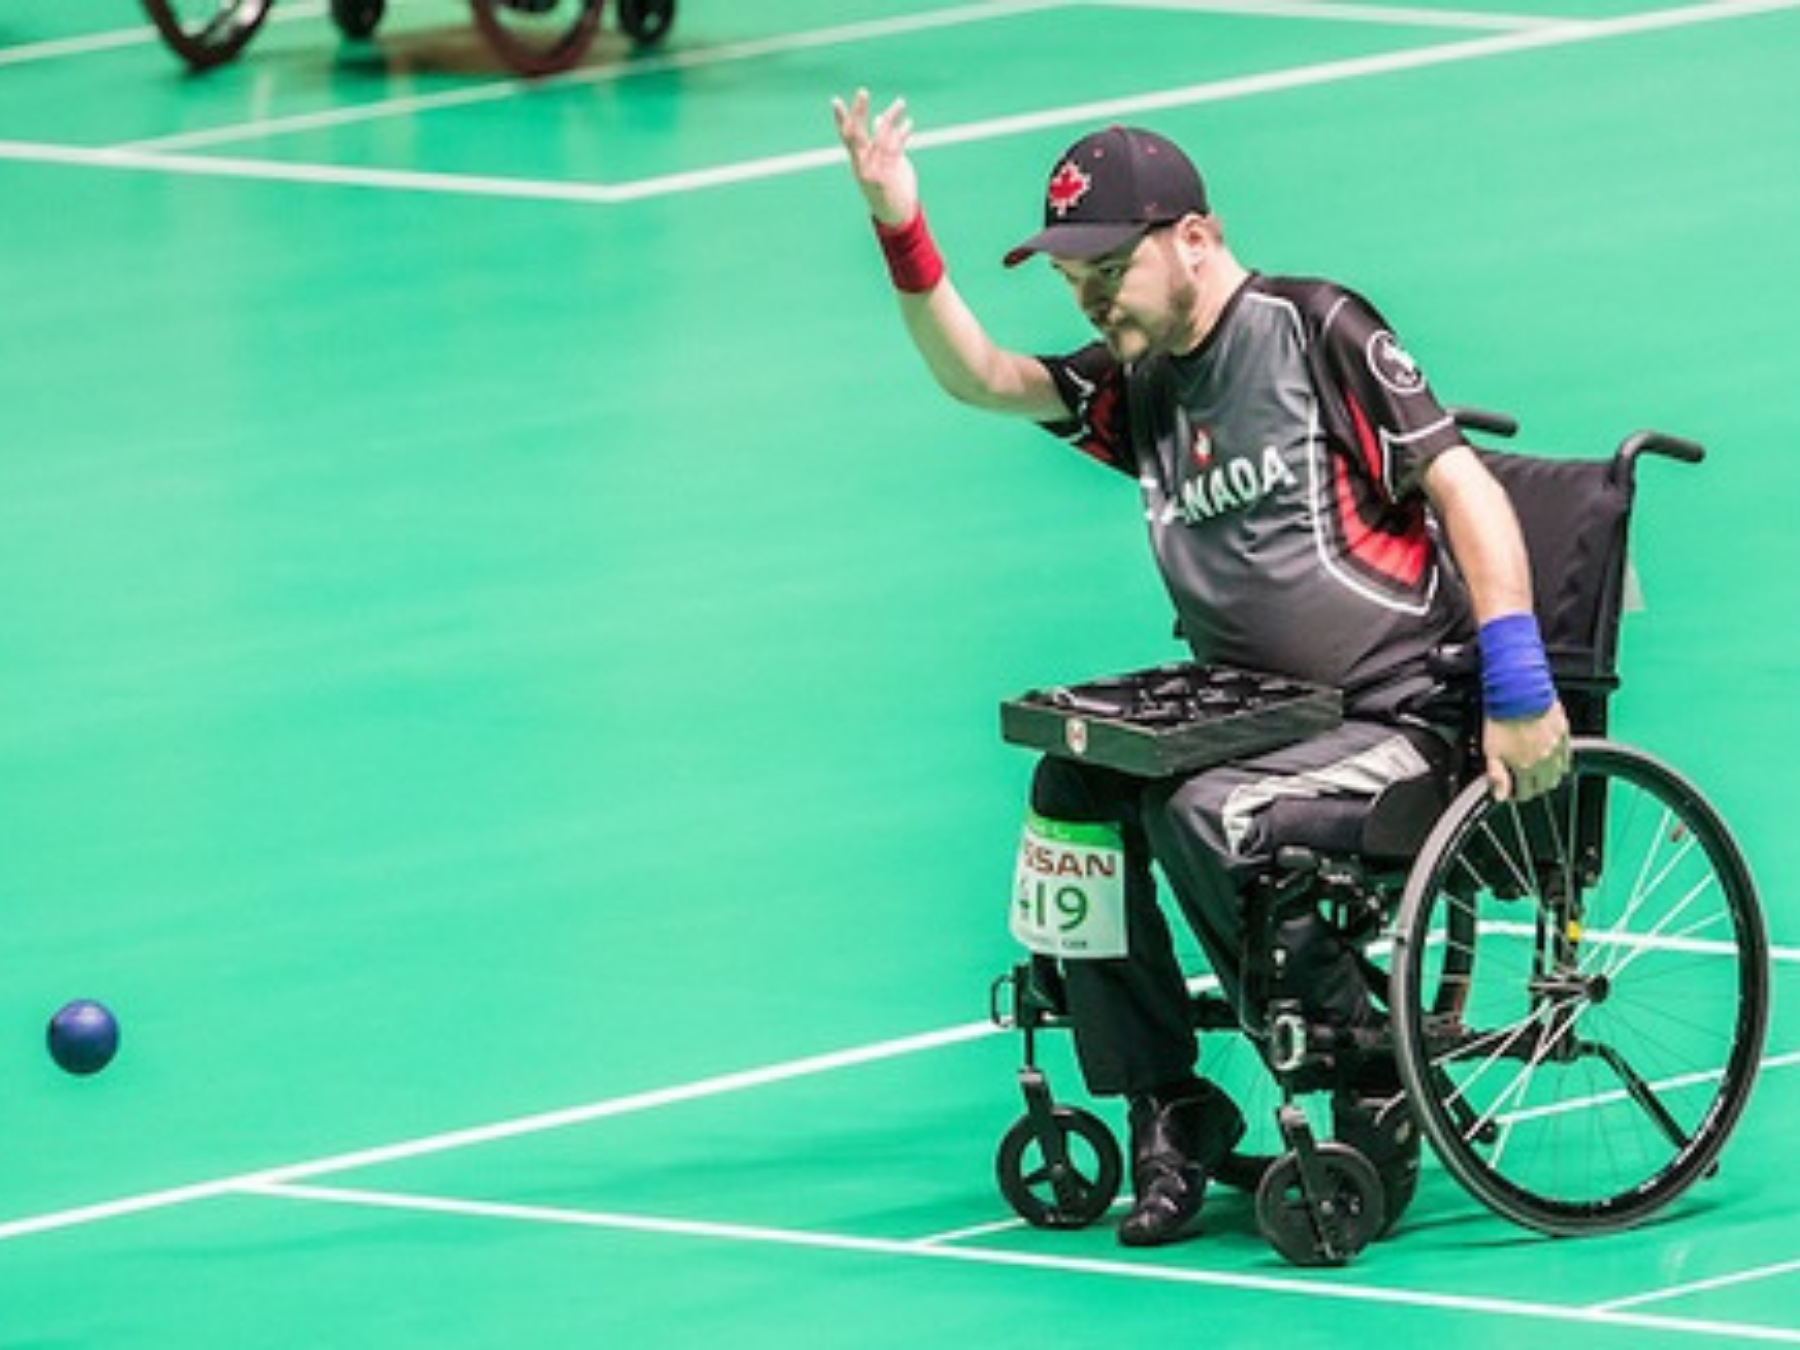 Iulian Ciobanu competing at Tokyo Paralympic Games | Iulian Ciobanu participe aux Jeux paralympiques de Tokyo